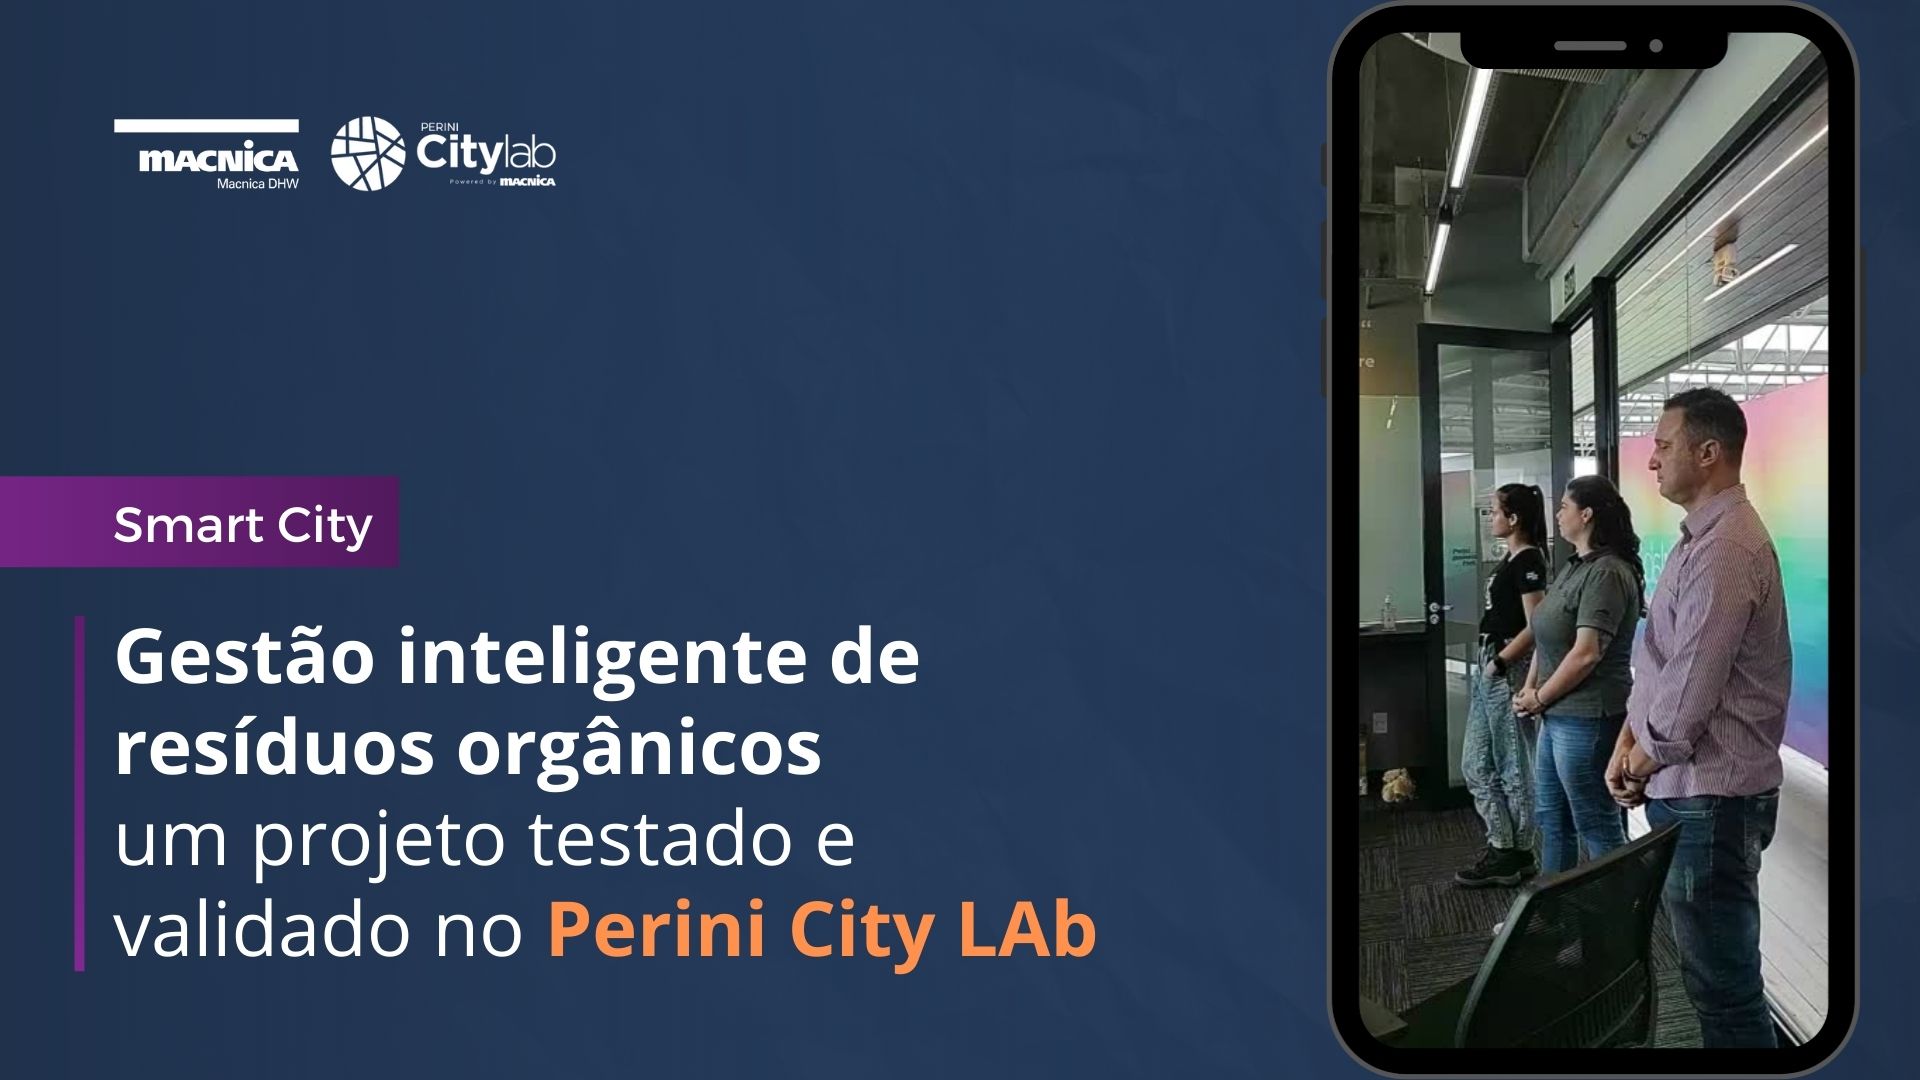 You are currently viewing Gestão inteligente de resíduos orgânicos – um projeto testado e validado no Perini City Lab.